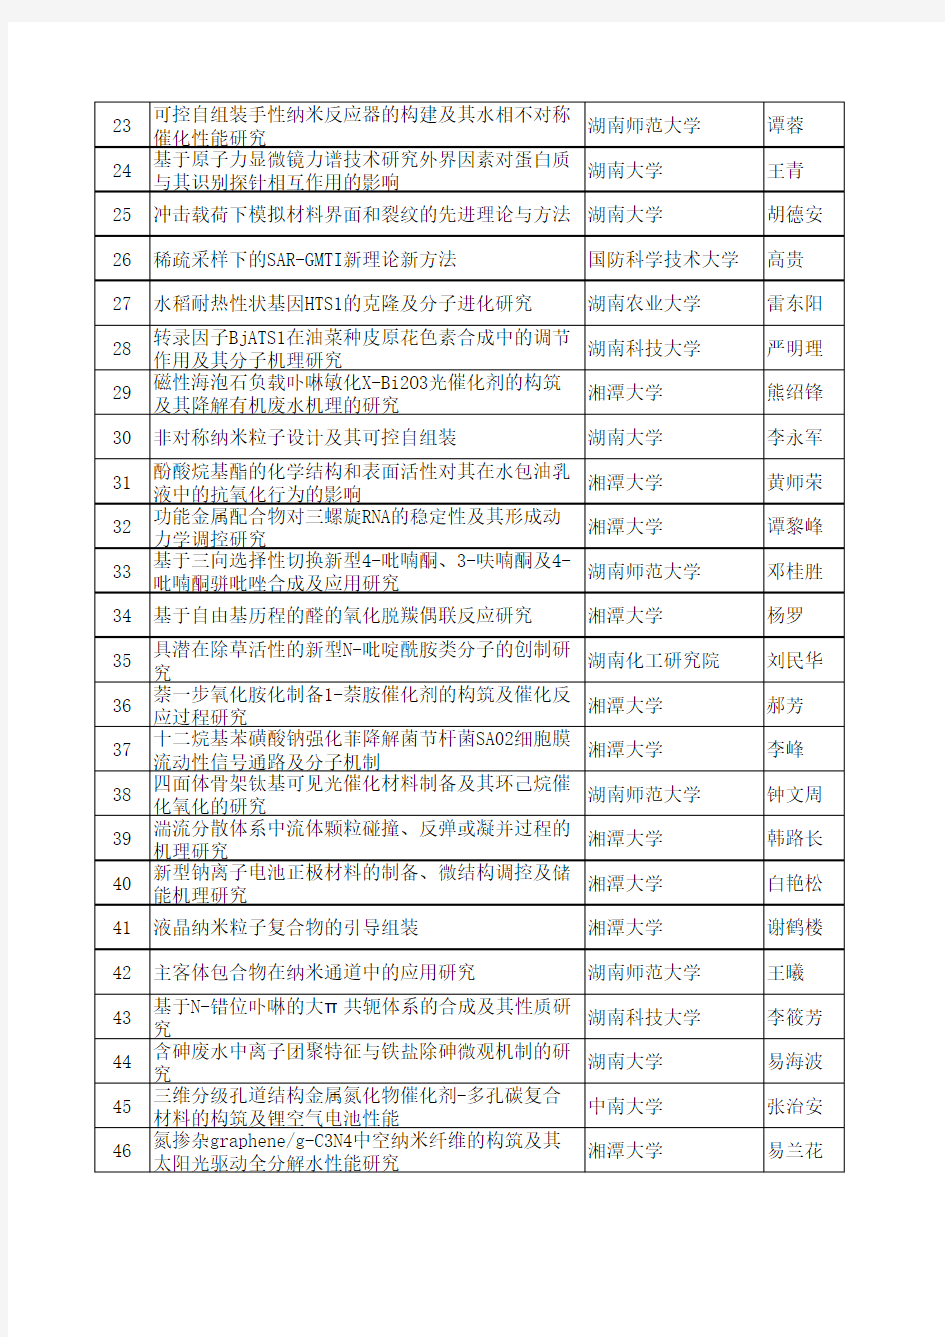 2016年度湖南省自然科学基金拟立项项目清单